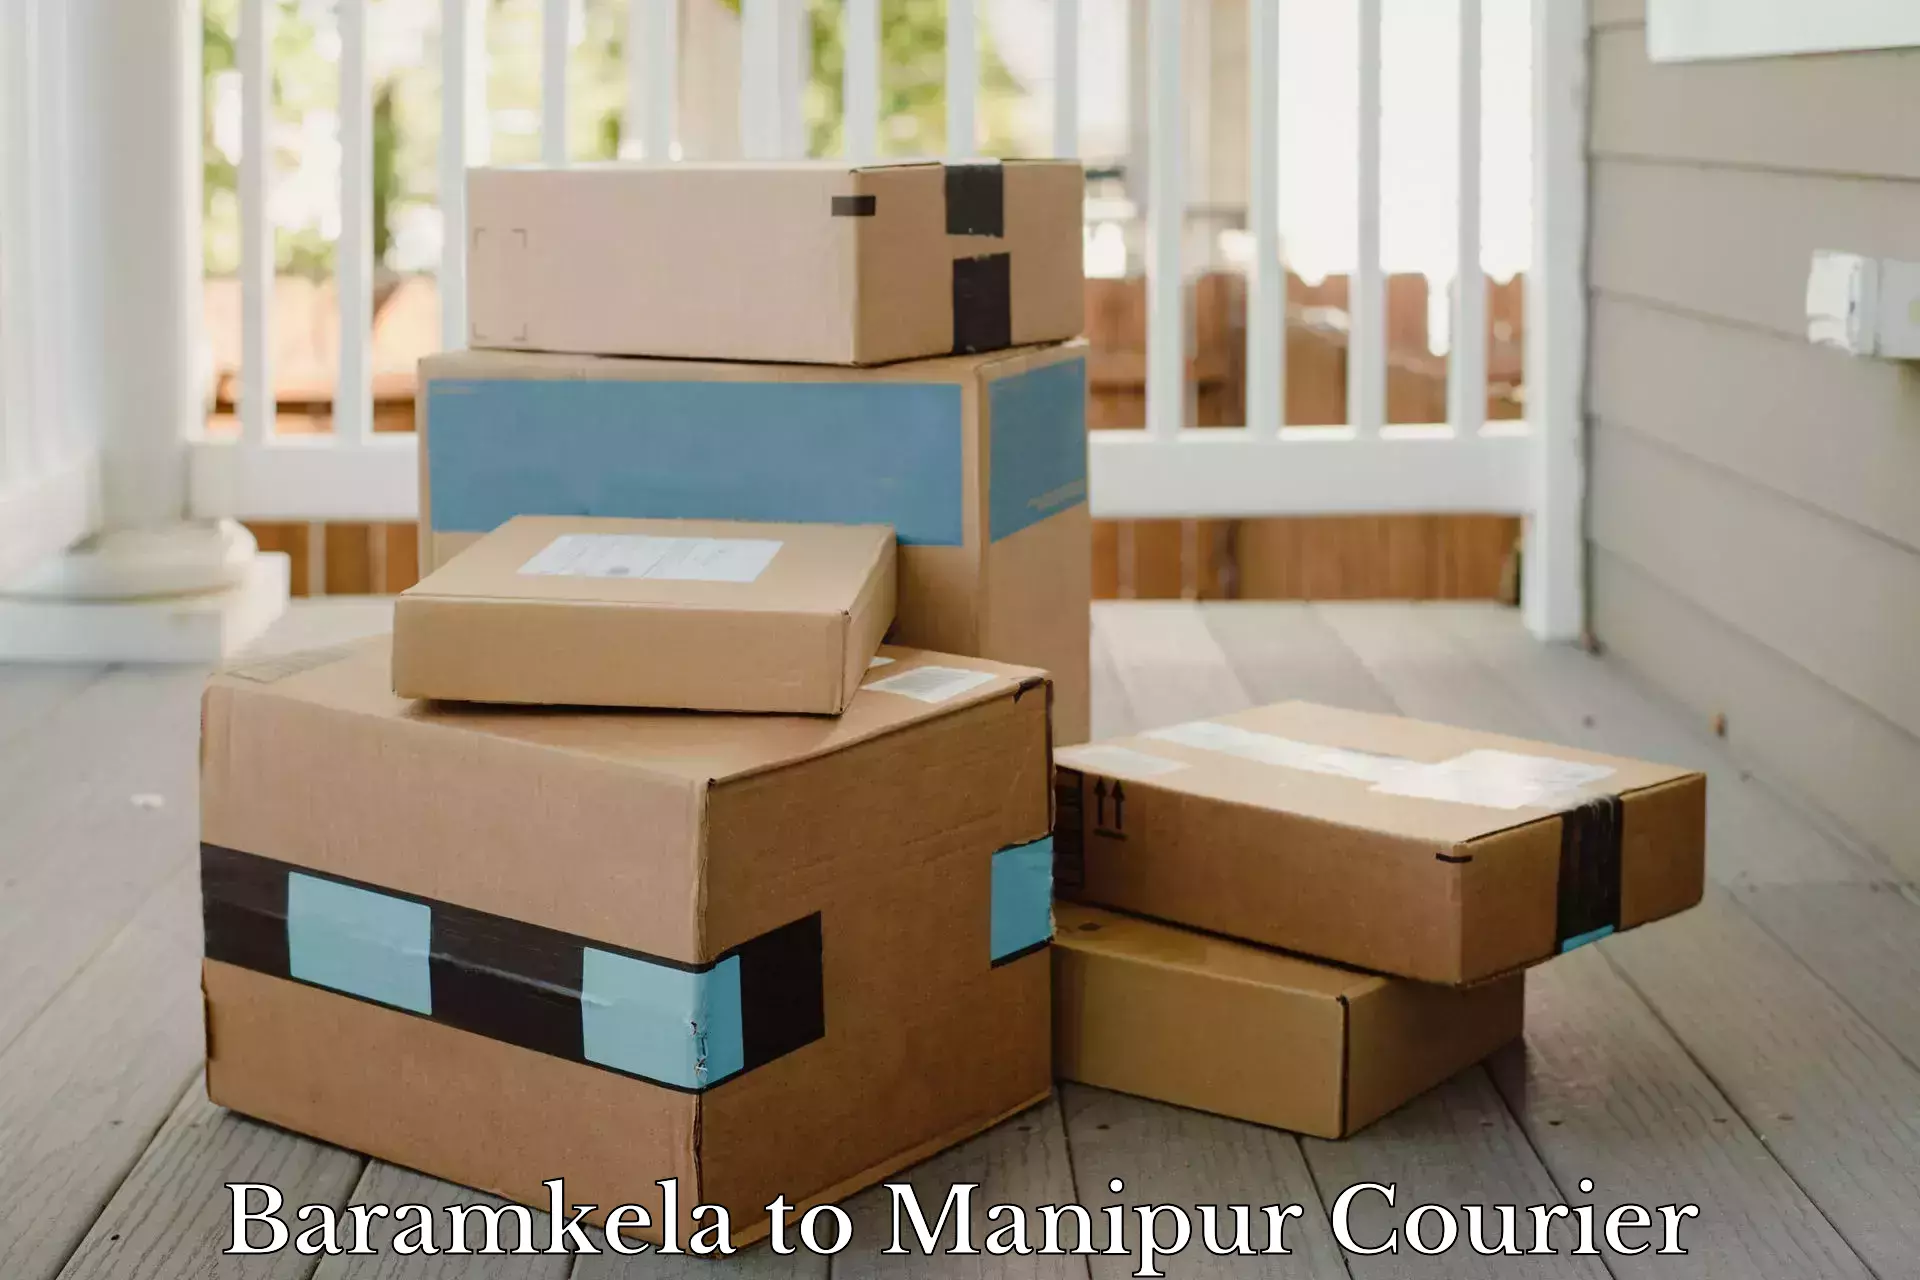 Efficient logistics management in Baramkela to NIT Manipur